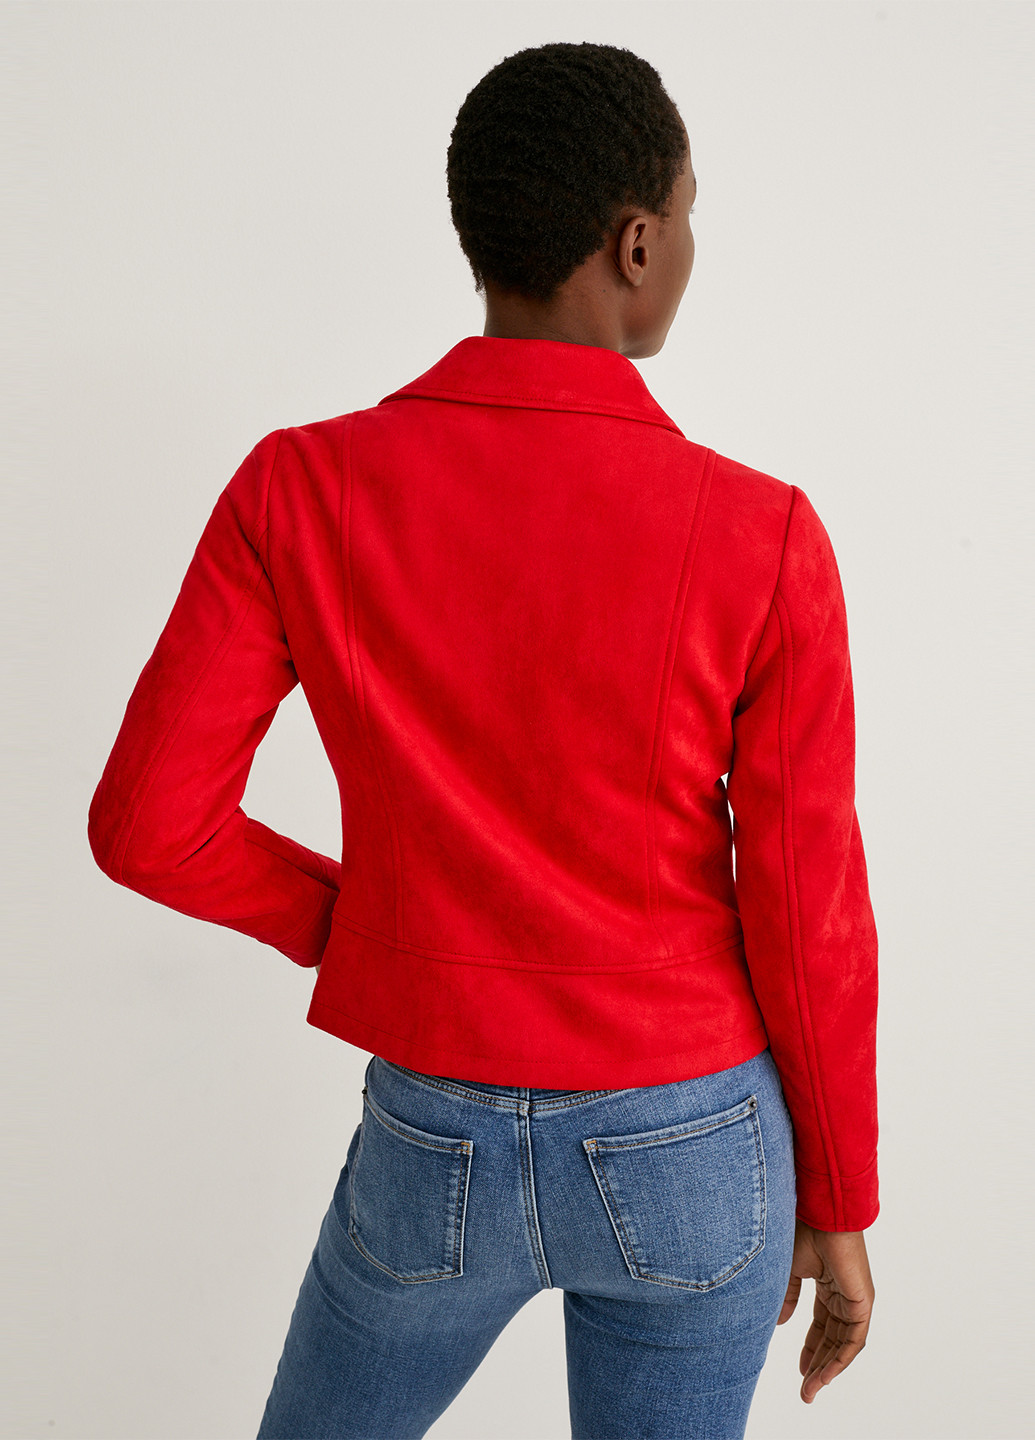 Красная демисезонная куртка куртка-пиджак C&A